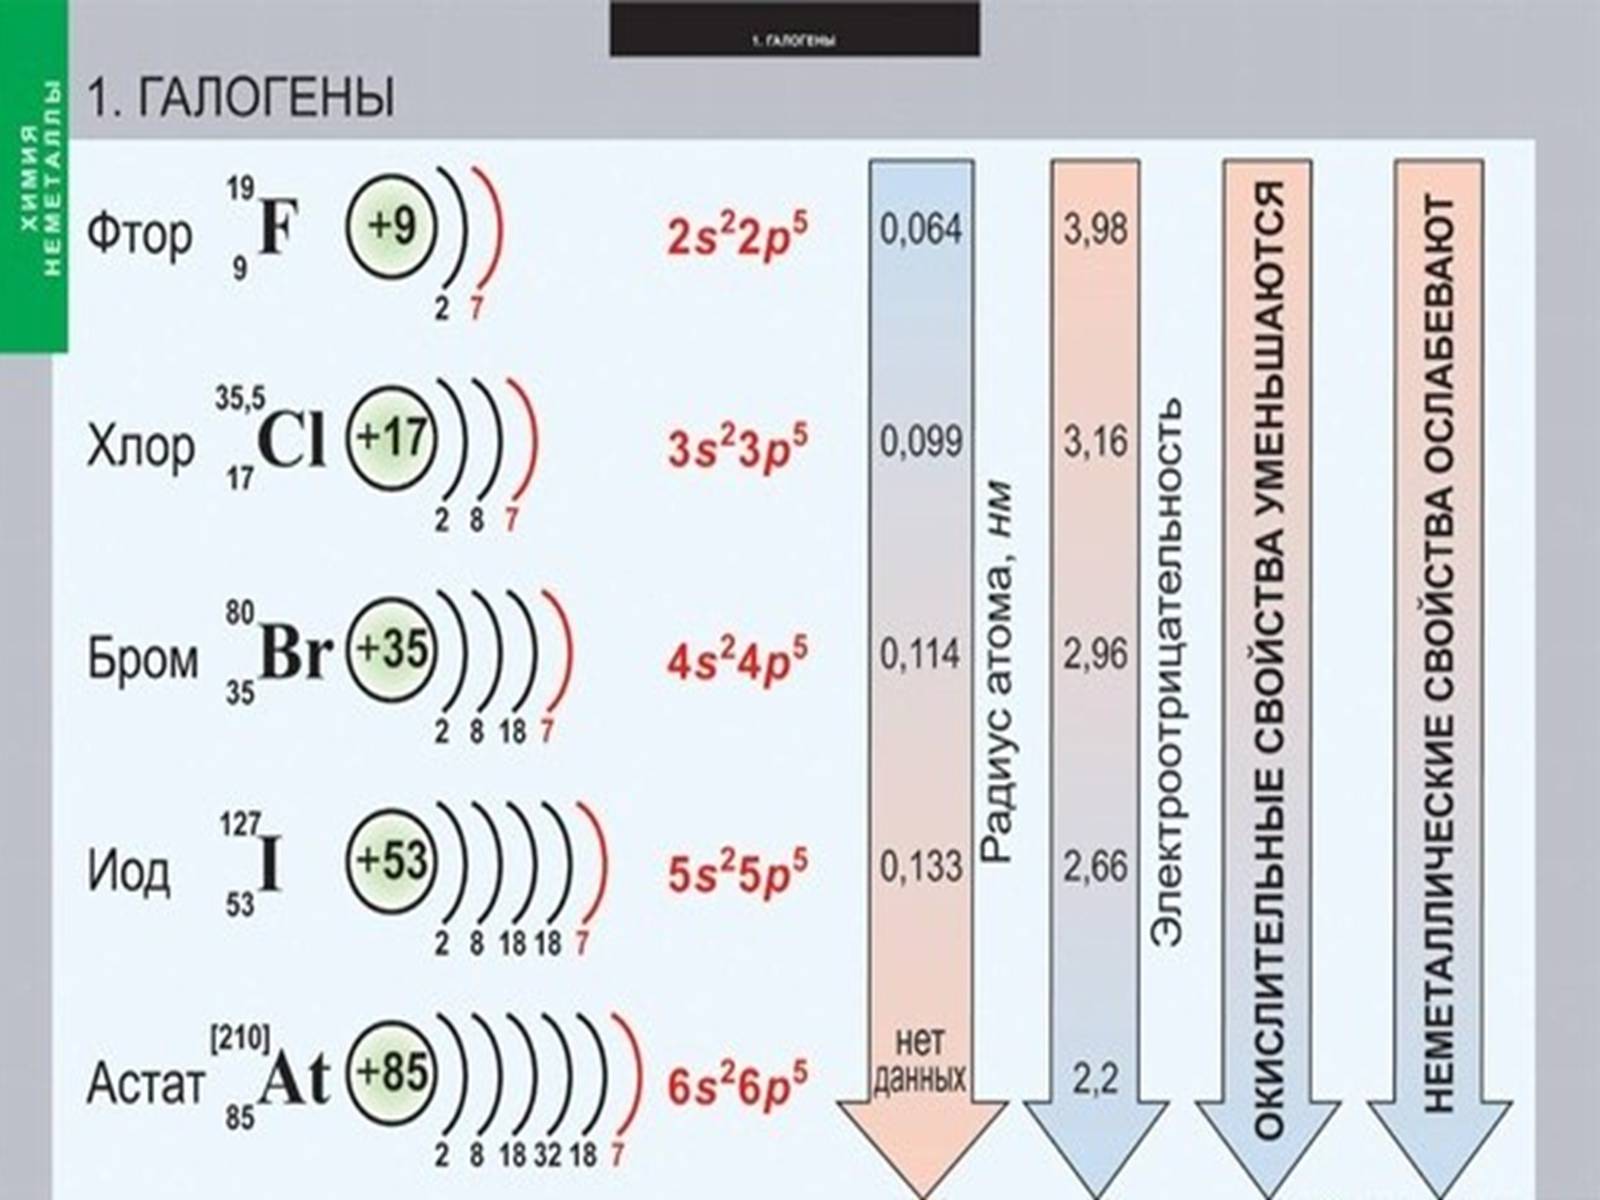 Характеристики верные для элемента брома. Формула фтор строение электронных оболочек. Составьте схему электронного строения атома брома. Галогены. Электронная конфигурация галогенов.